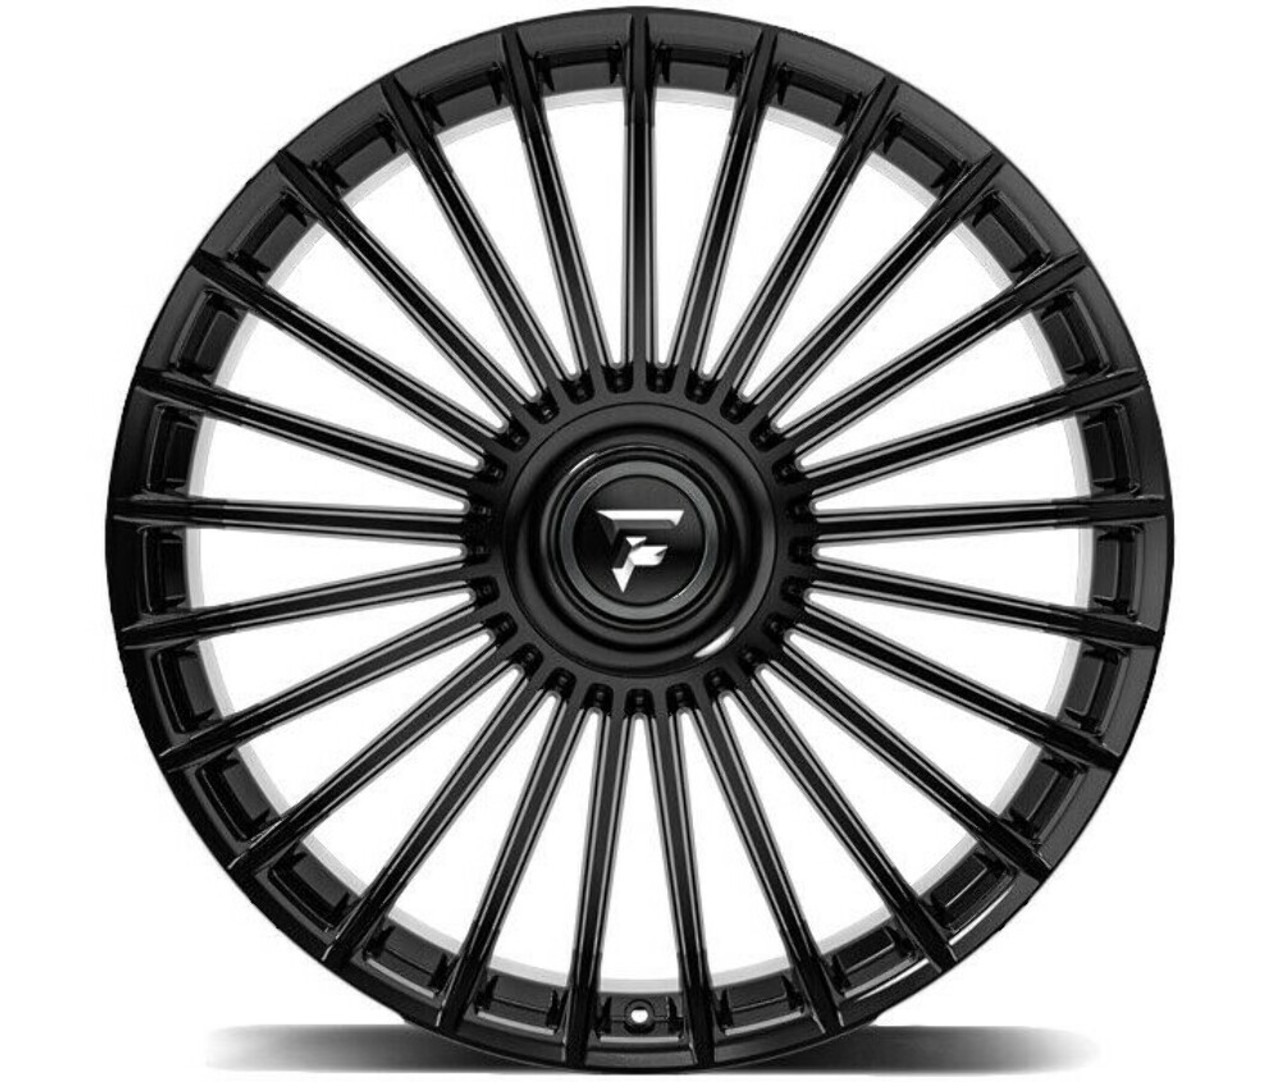 22" Fittipaldi Street FS370B Gloss Black 22x9.5 Wheel 6x135 6x5.5 25mm Rim